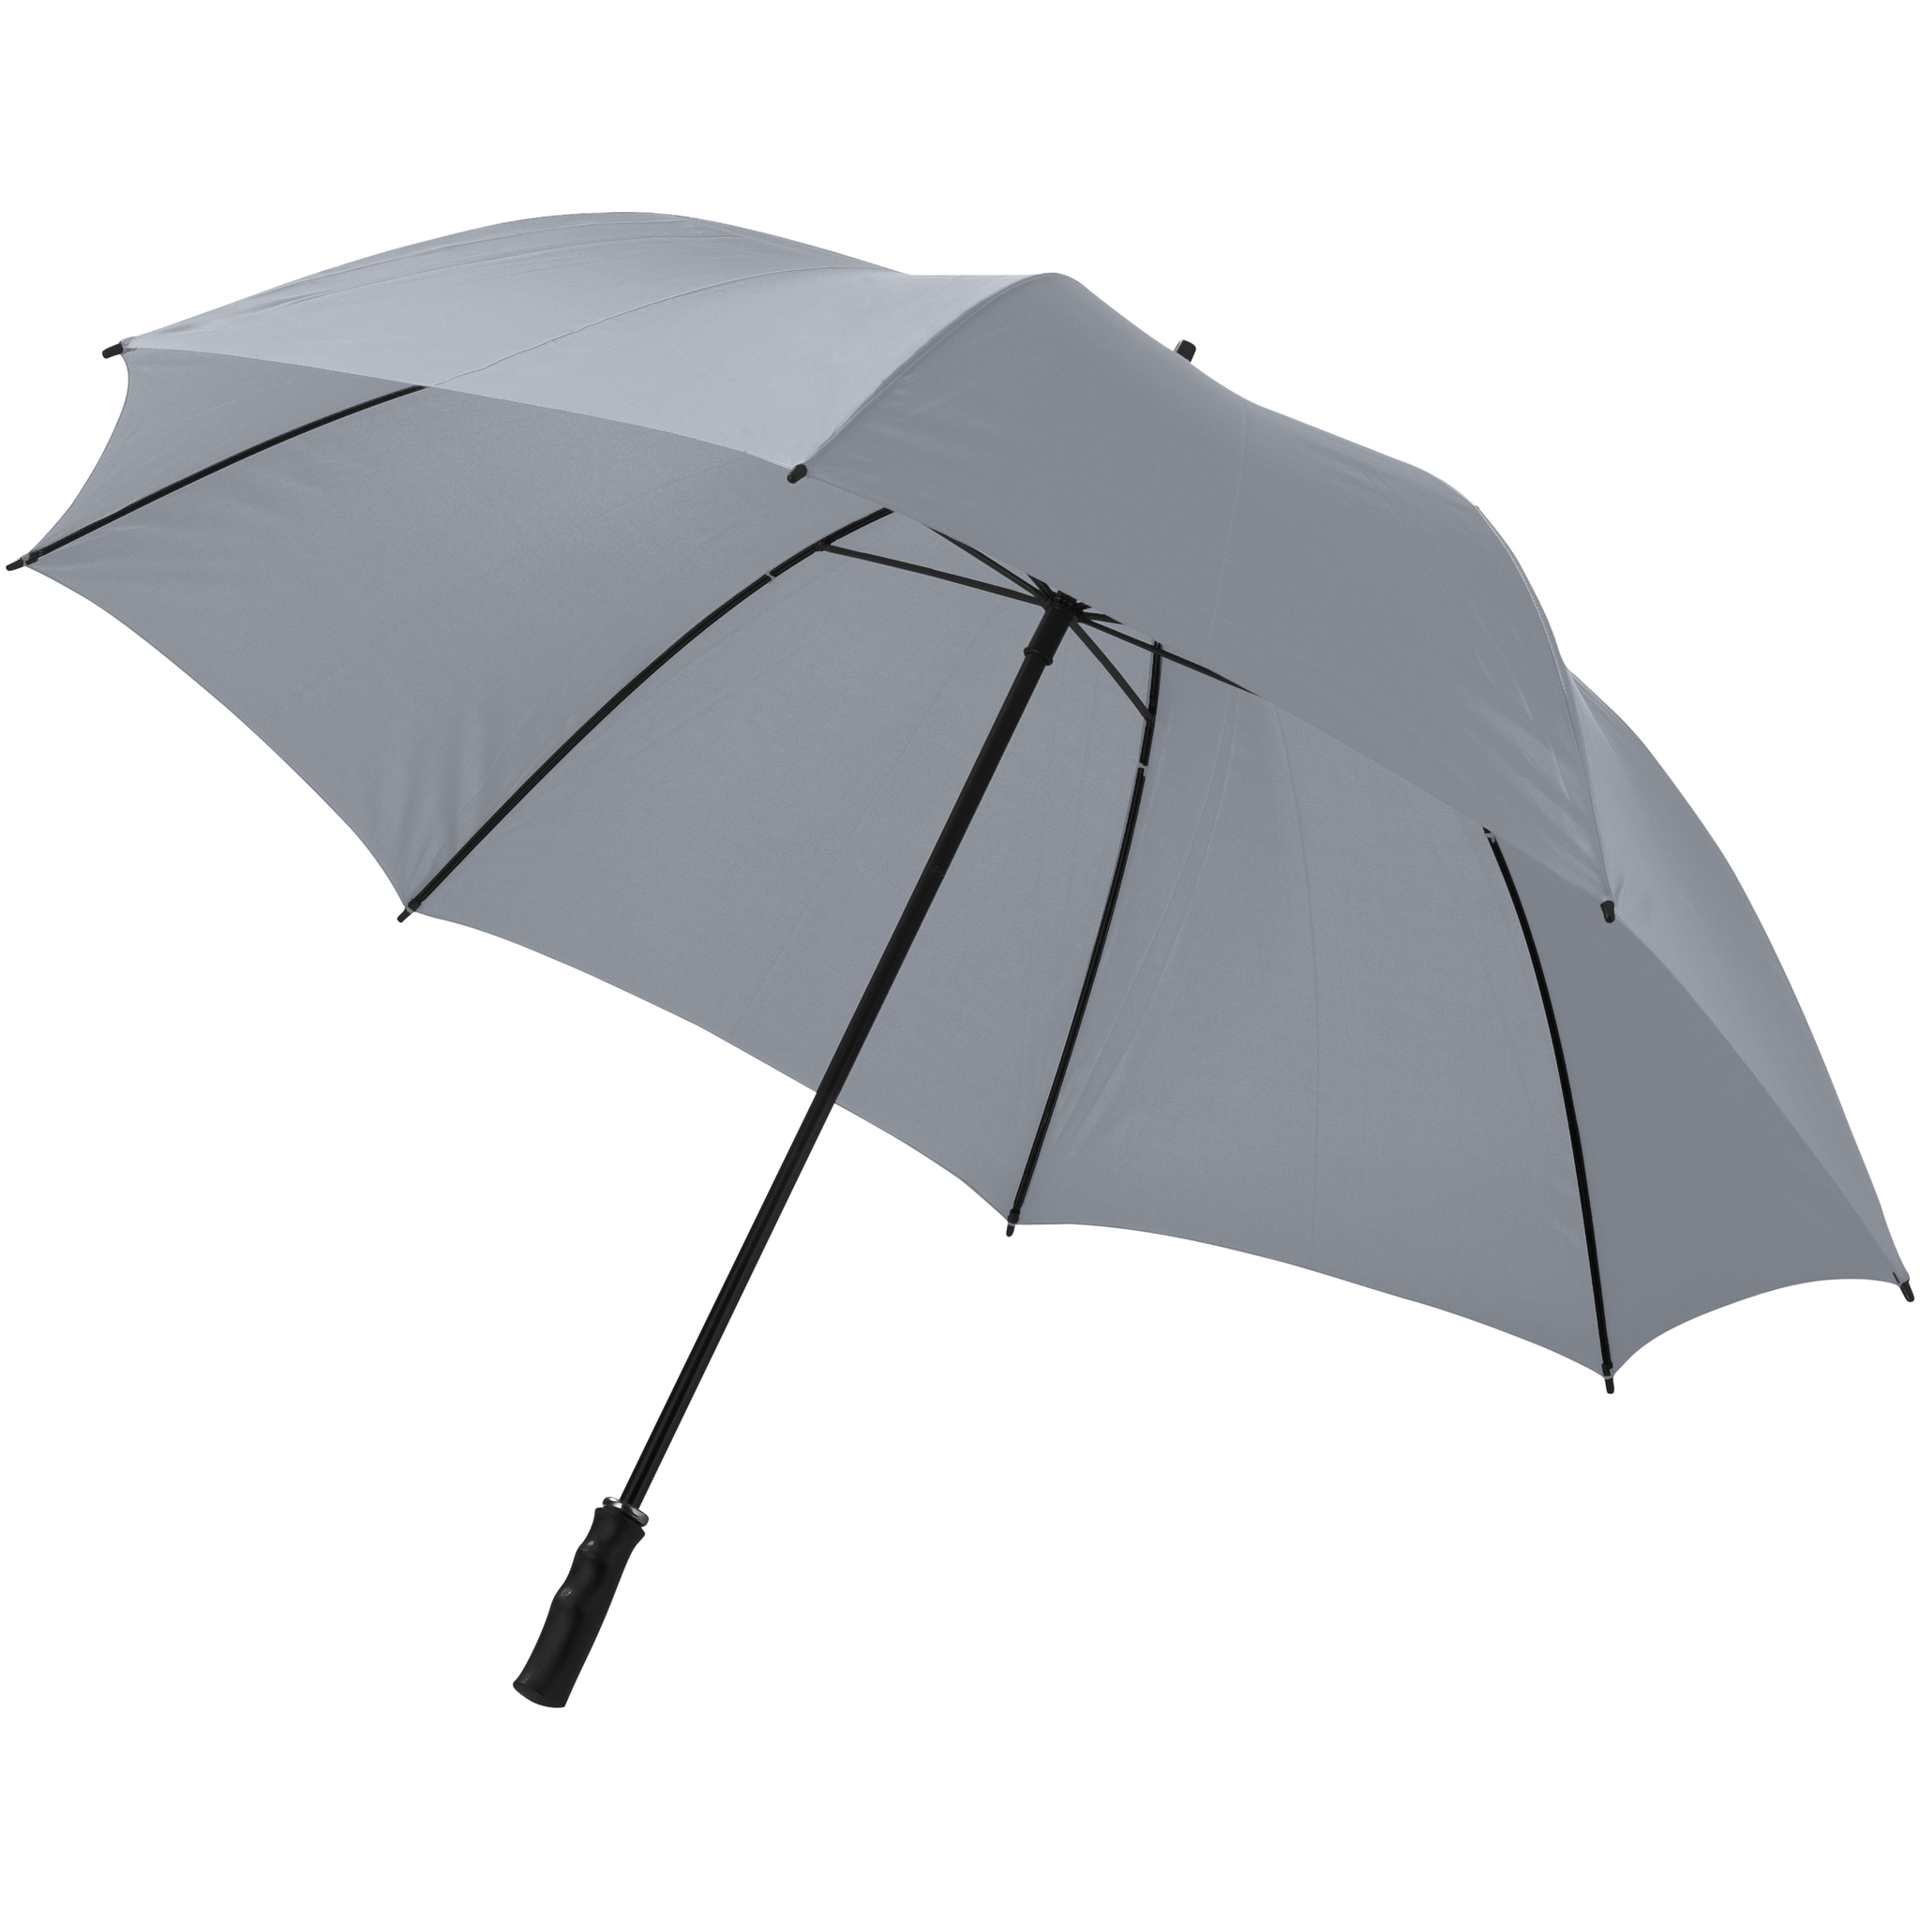 30 inch Golf Umbrella in grey